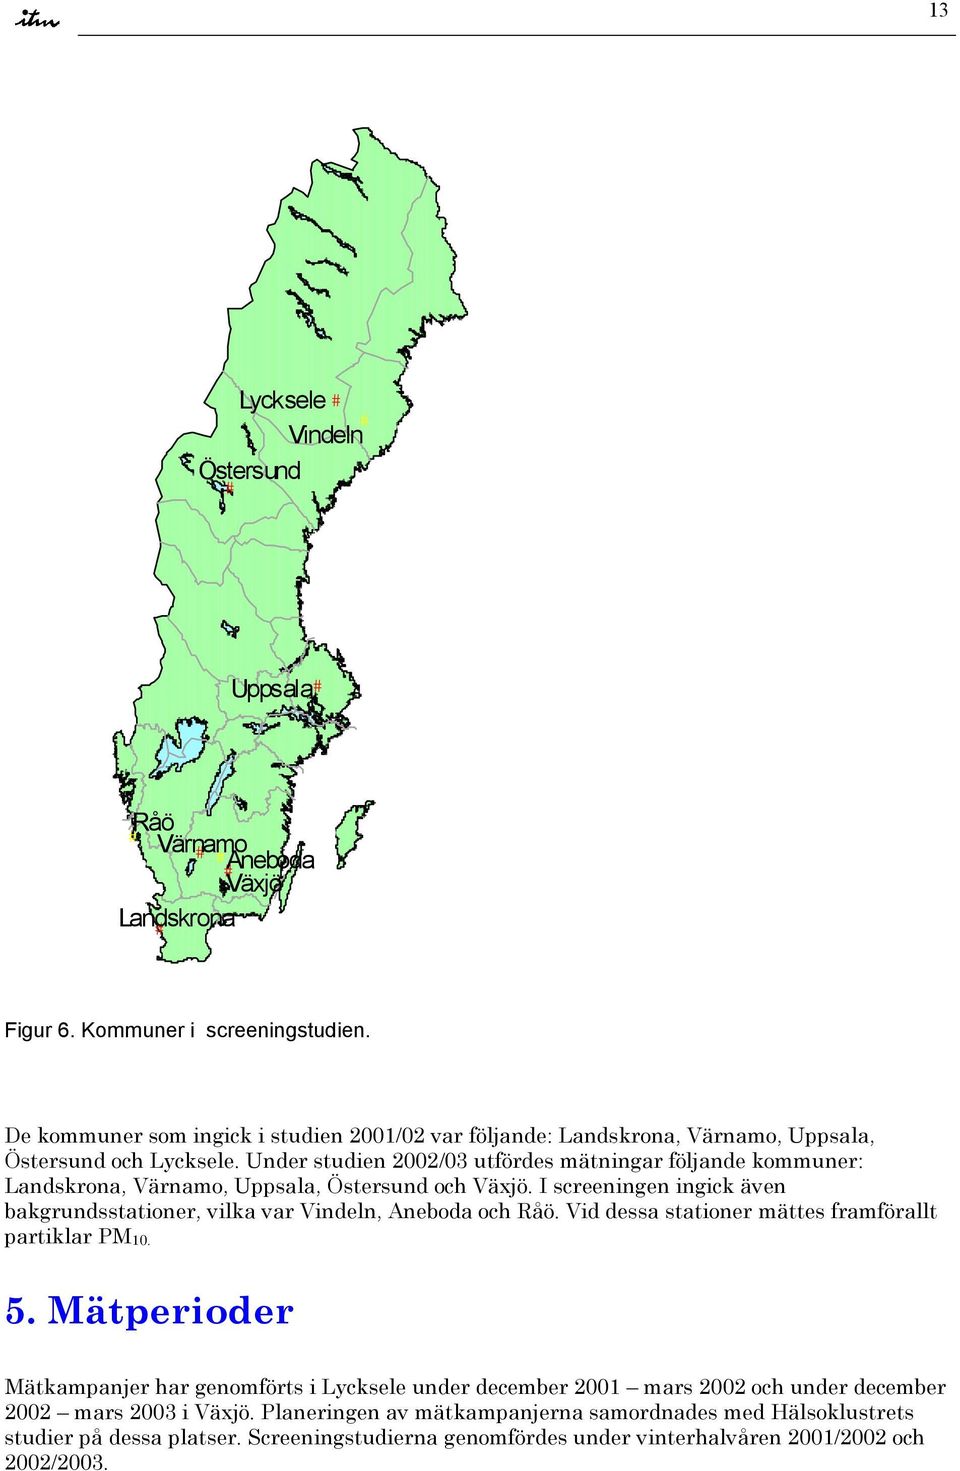 Under studien 22/3 utfördes mätningar följande kommuner: Landskrona, Värnamo, Uppsala, Östersund och Växjö. I screeningen ingick även bakgrundsstationer, vilka var Vindeln, Aneboda och Råö.